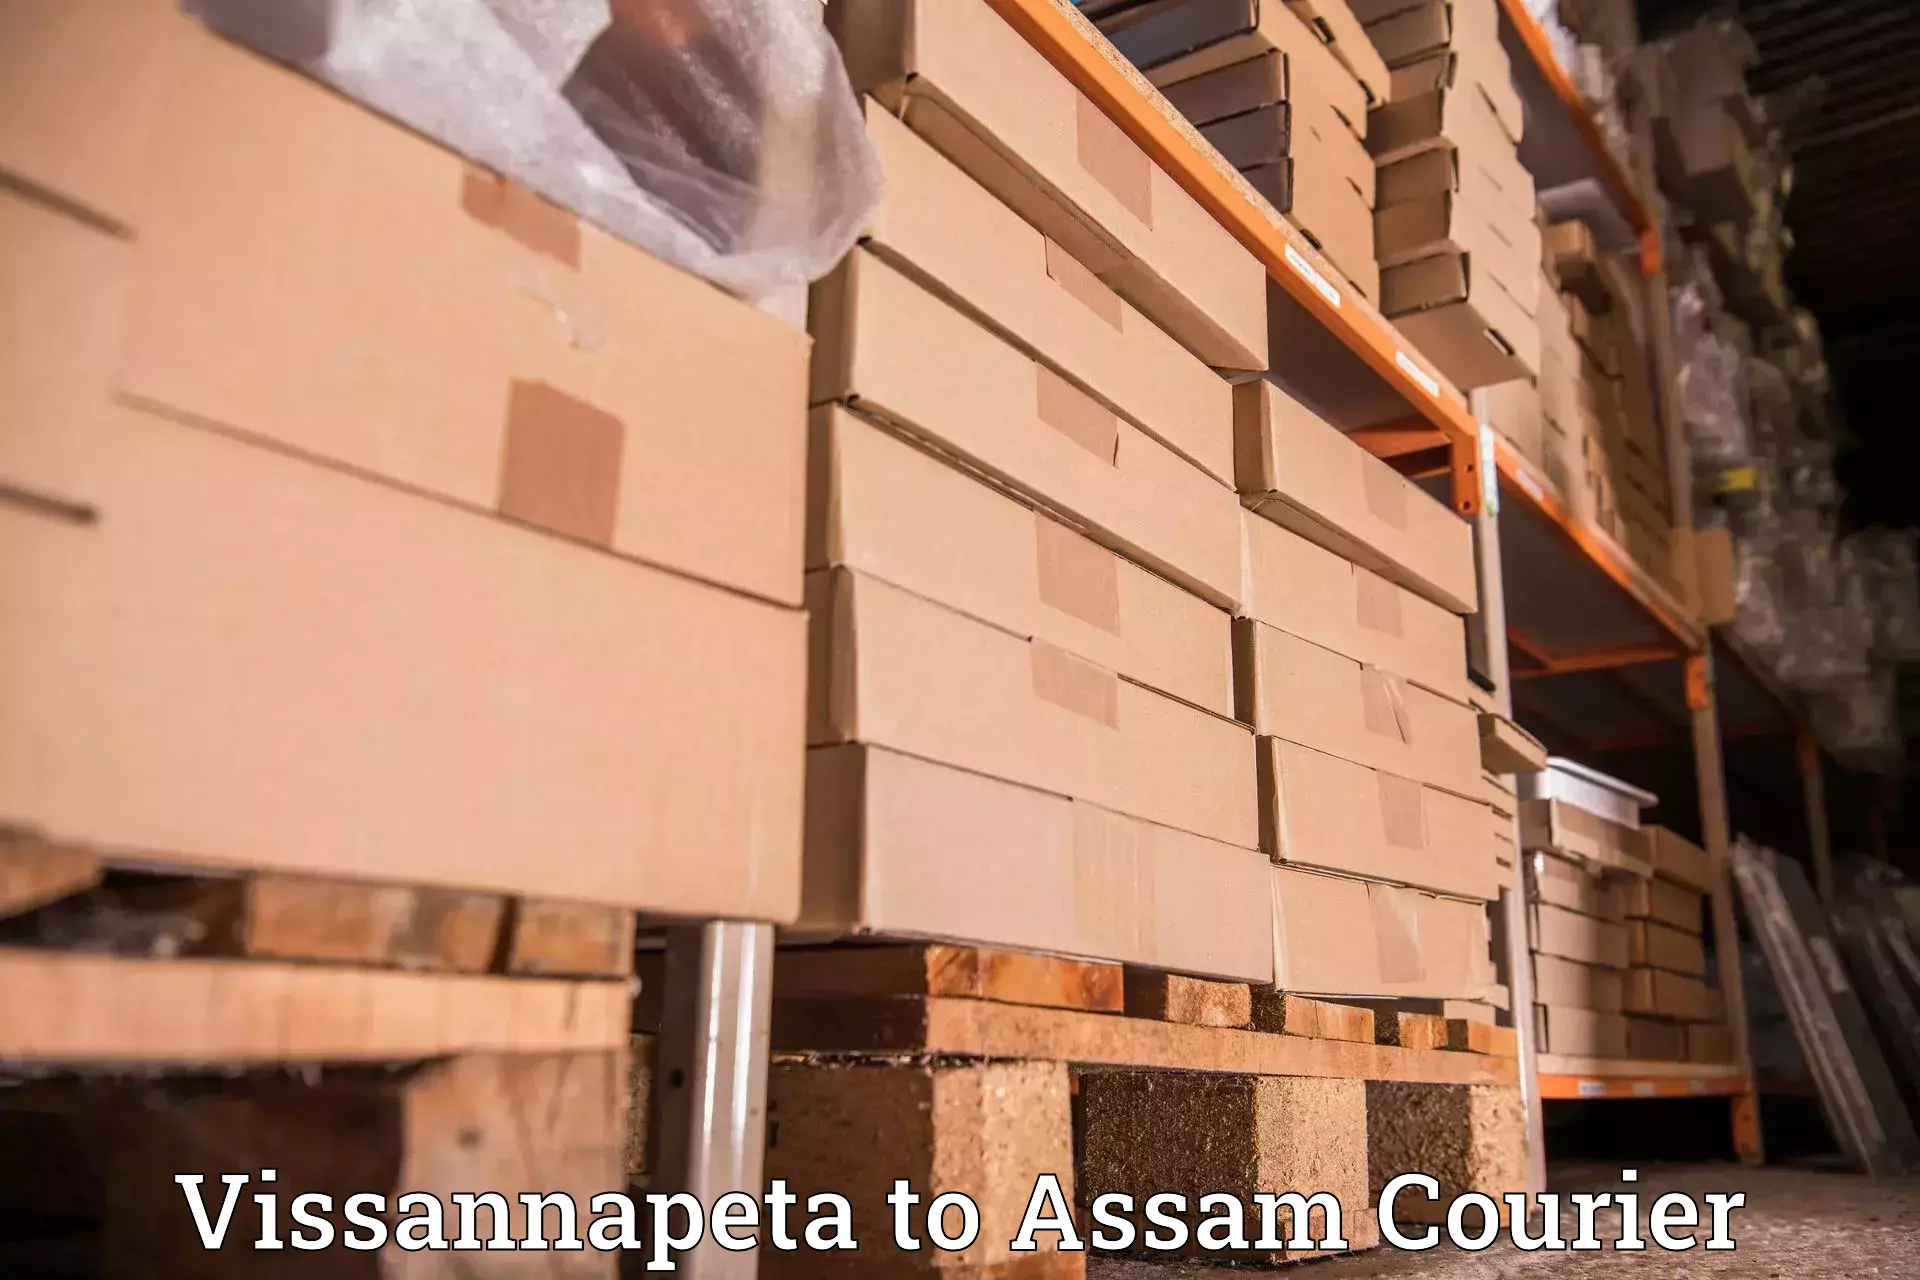 Parcel delivery automation Vissannapeta to Lakhipur